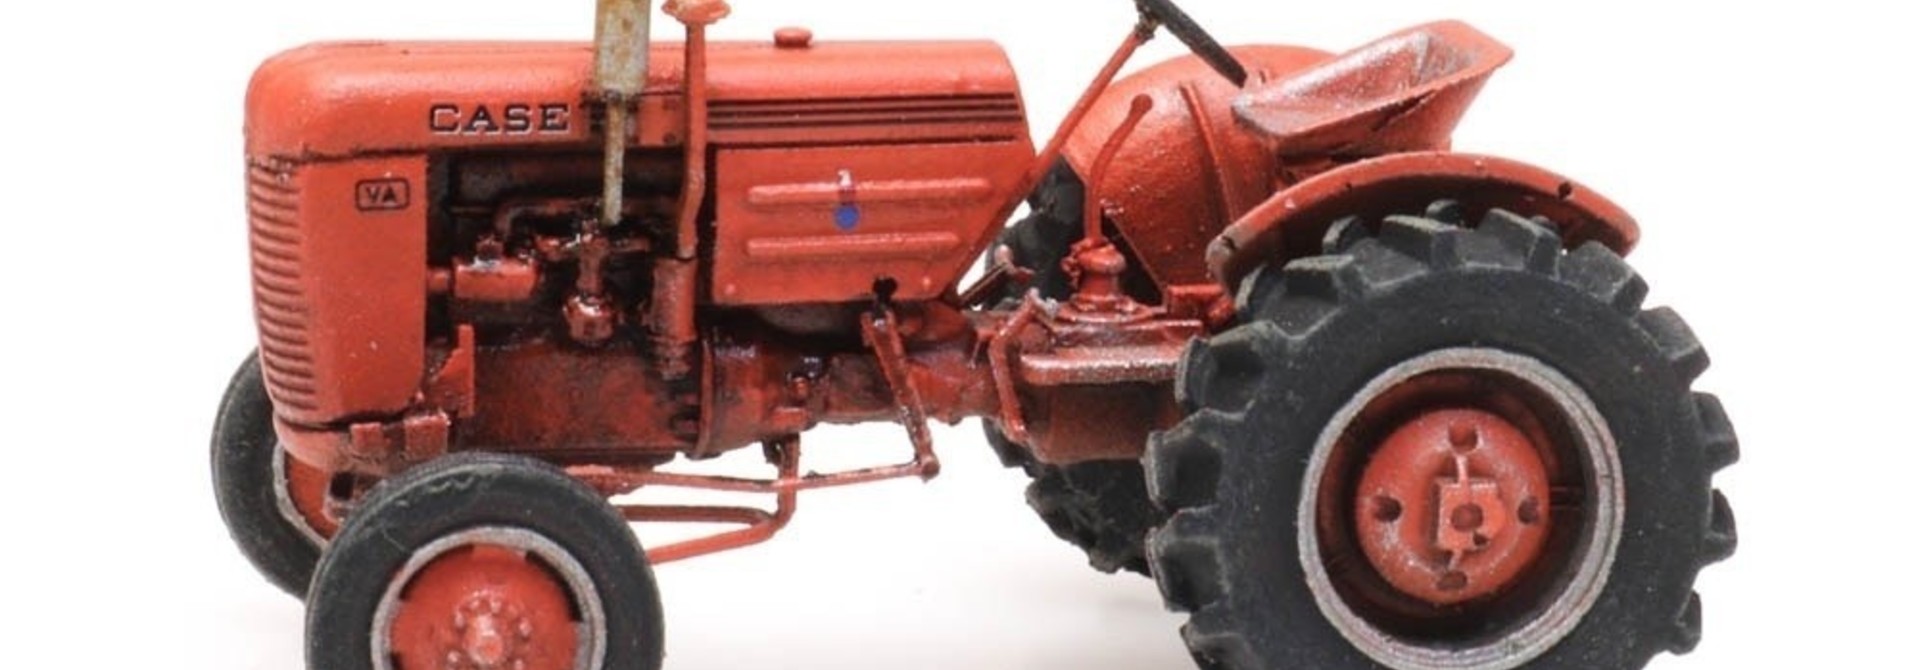 387443 Case VA tractor